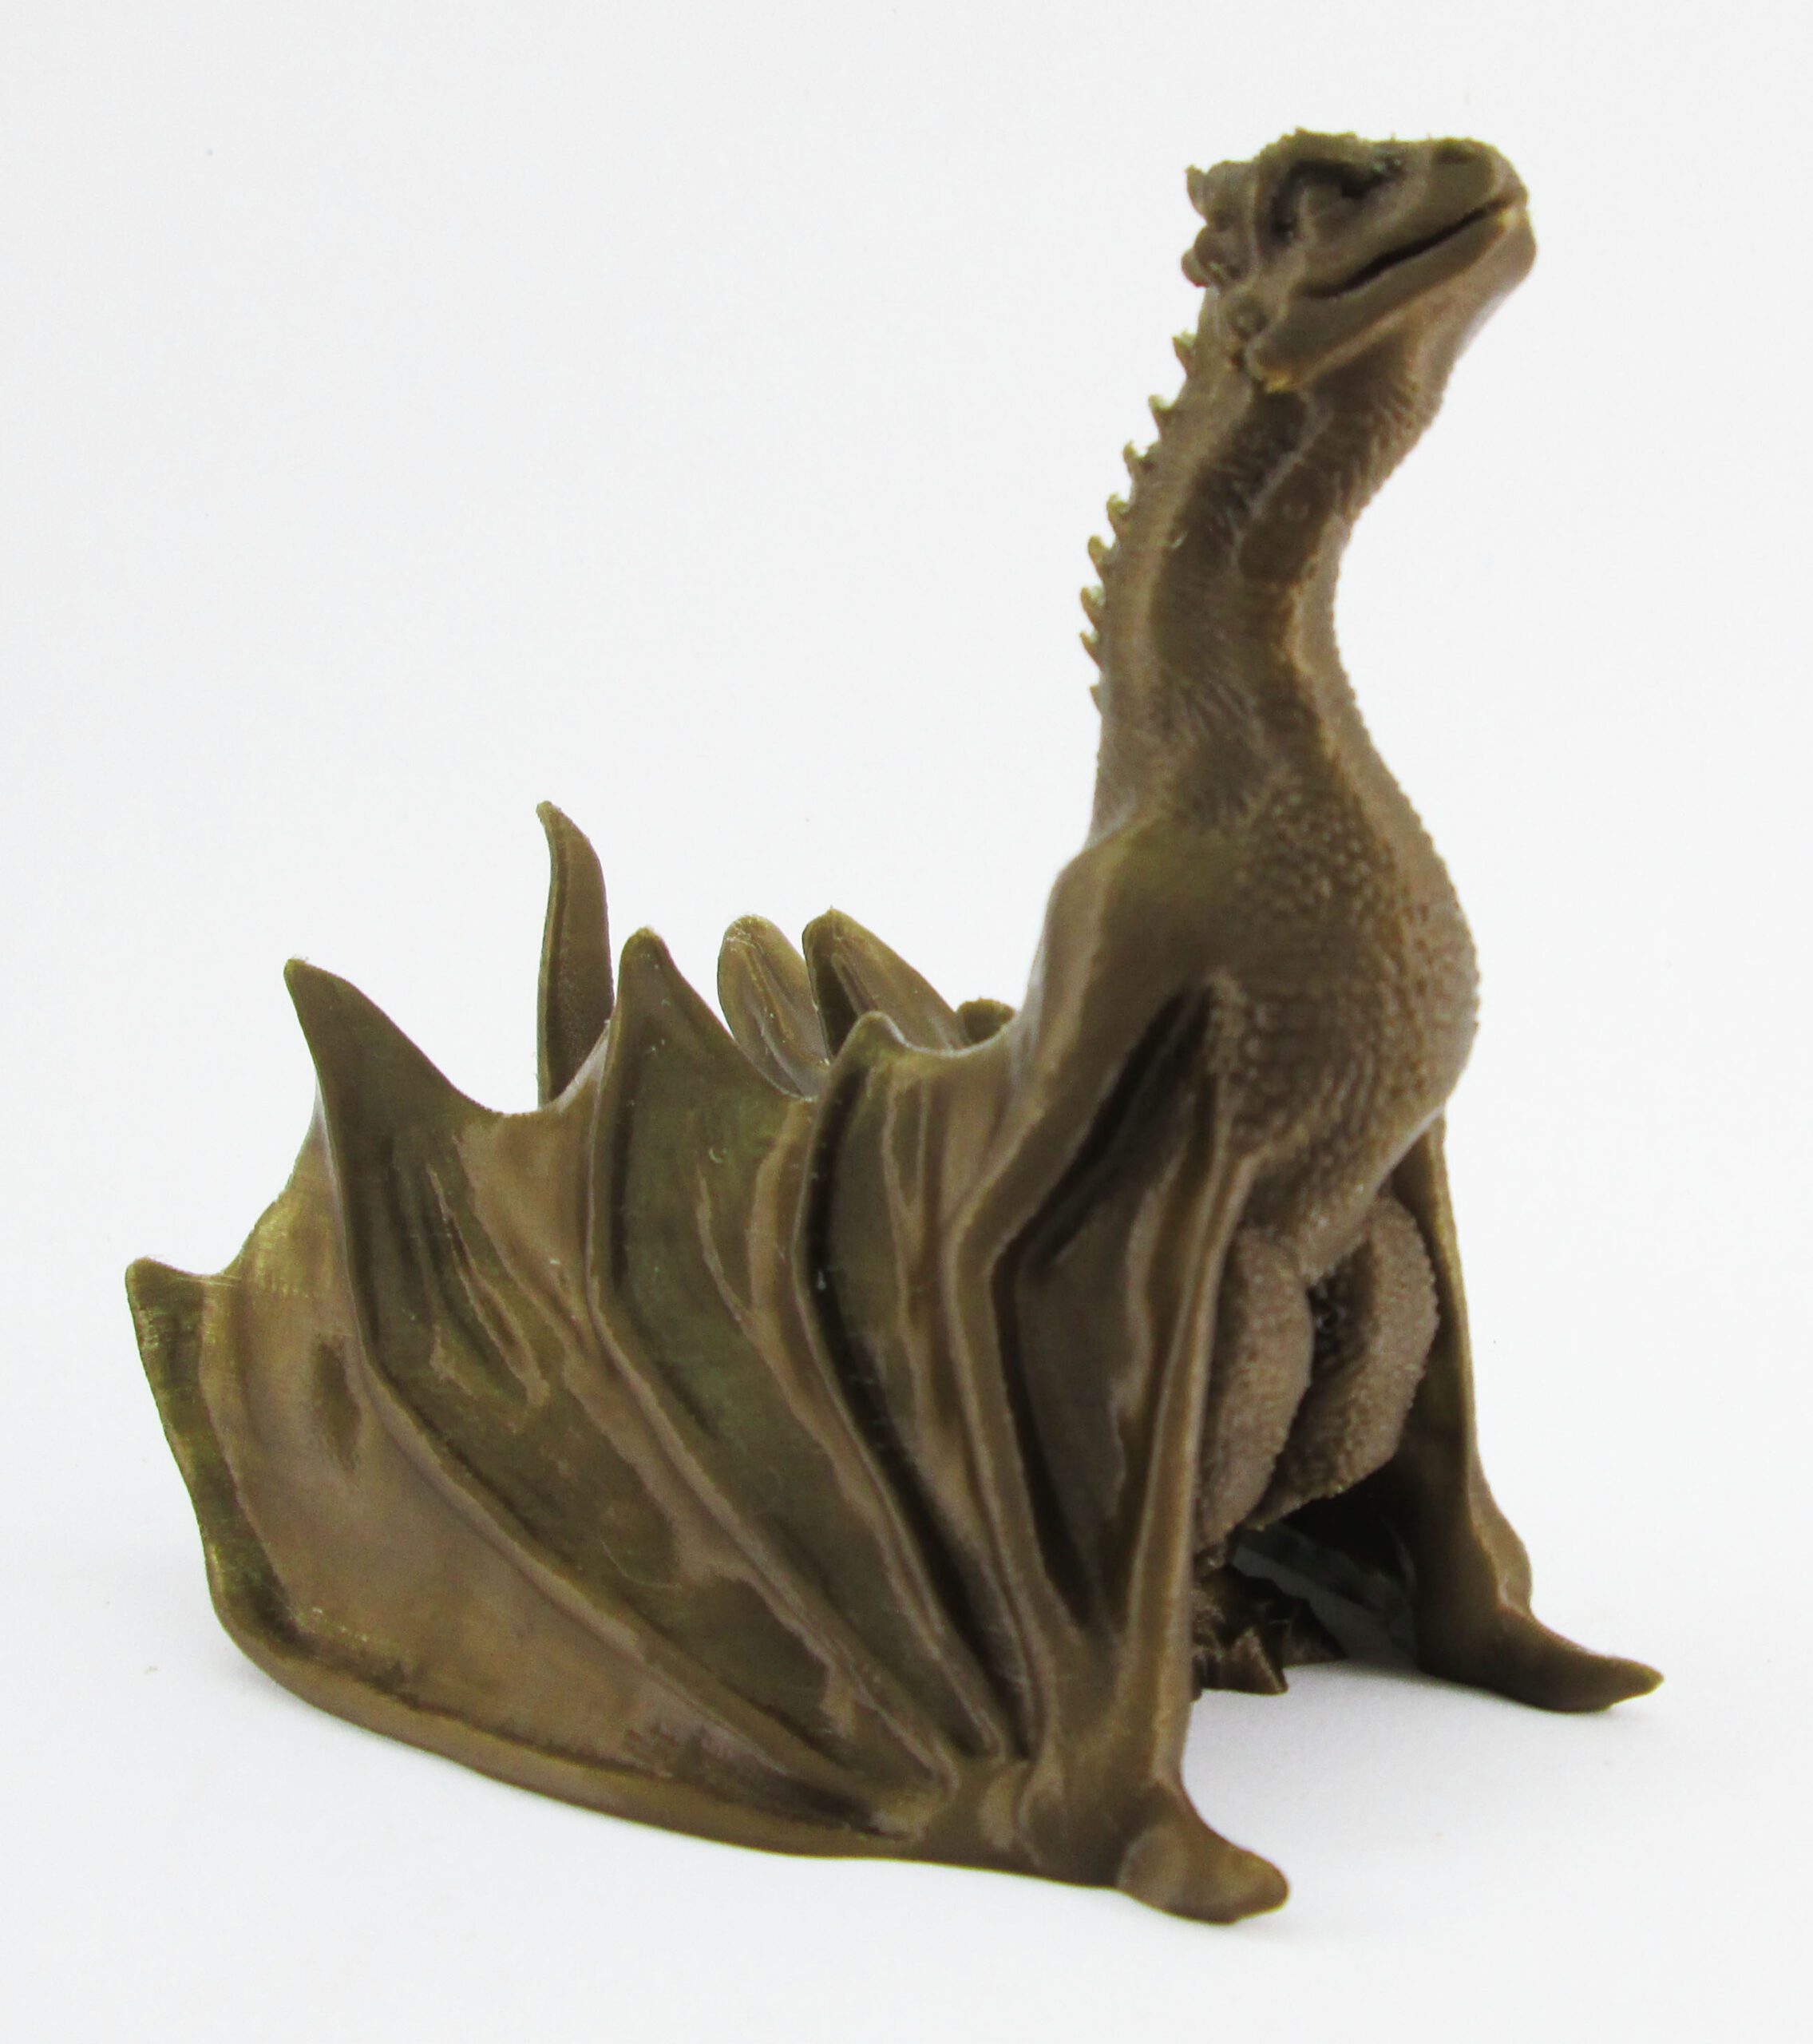 Estatueta Dragão Bebê 10Cm Altura – Toque 3D – Bronze - Capital Decor